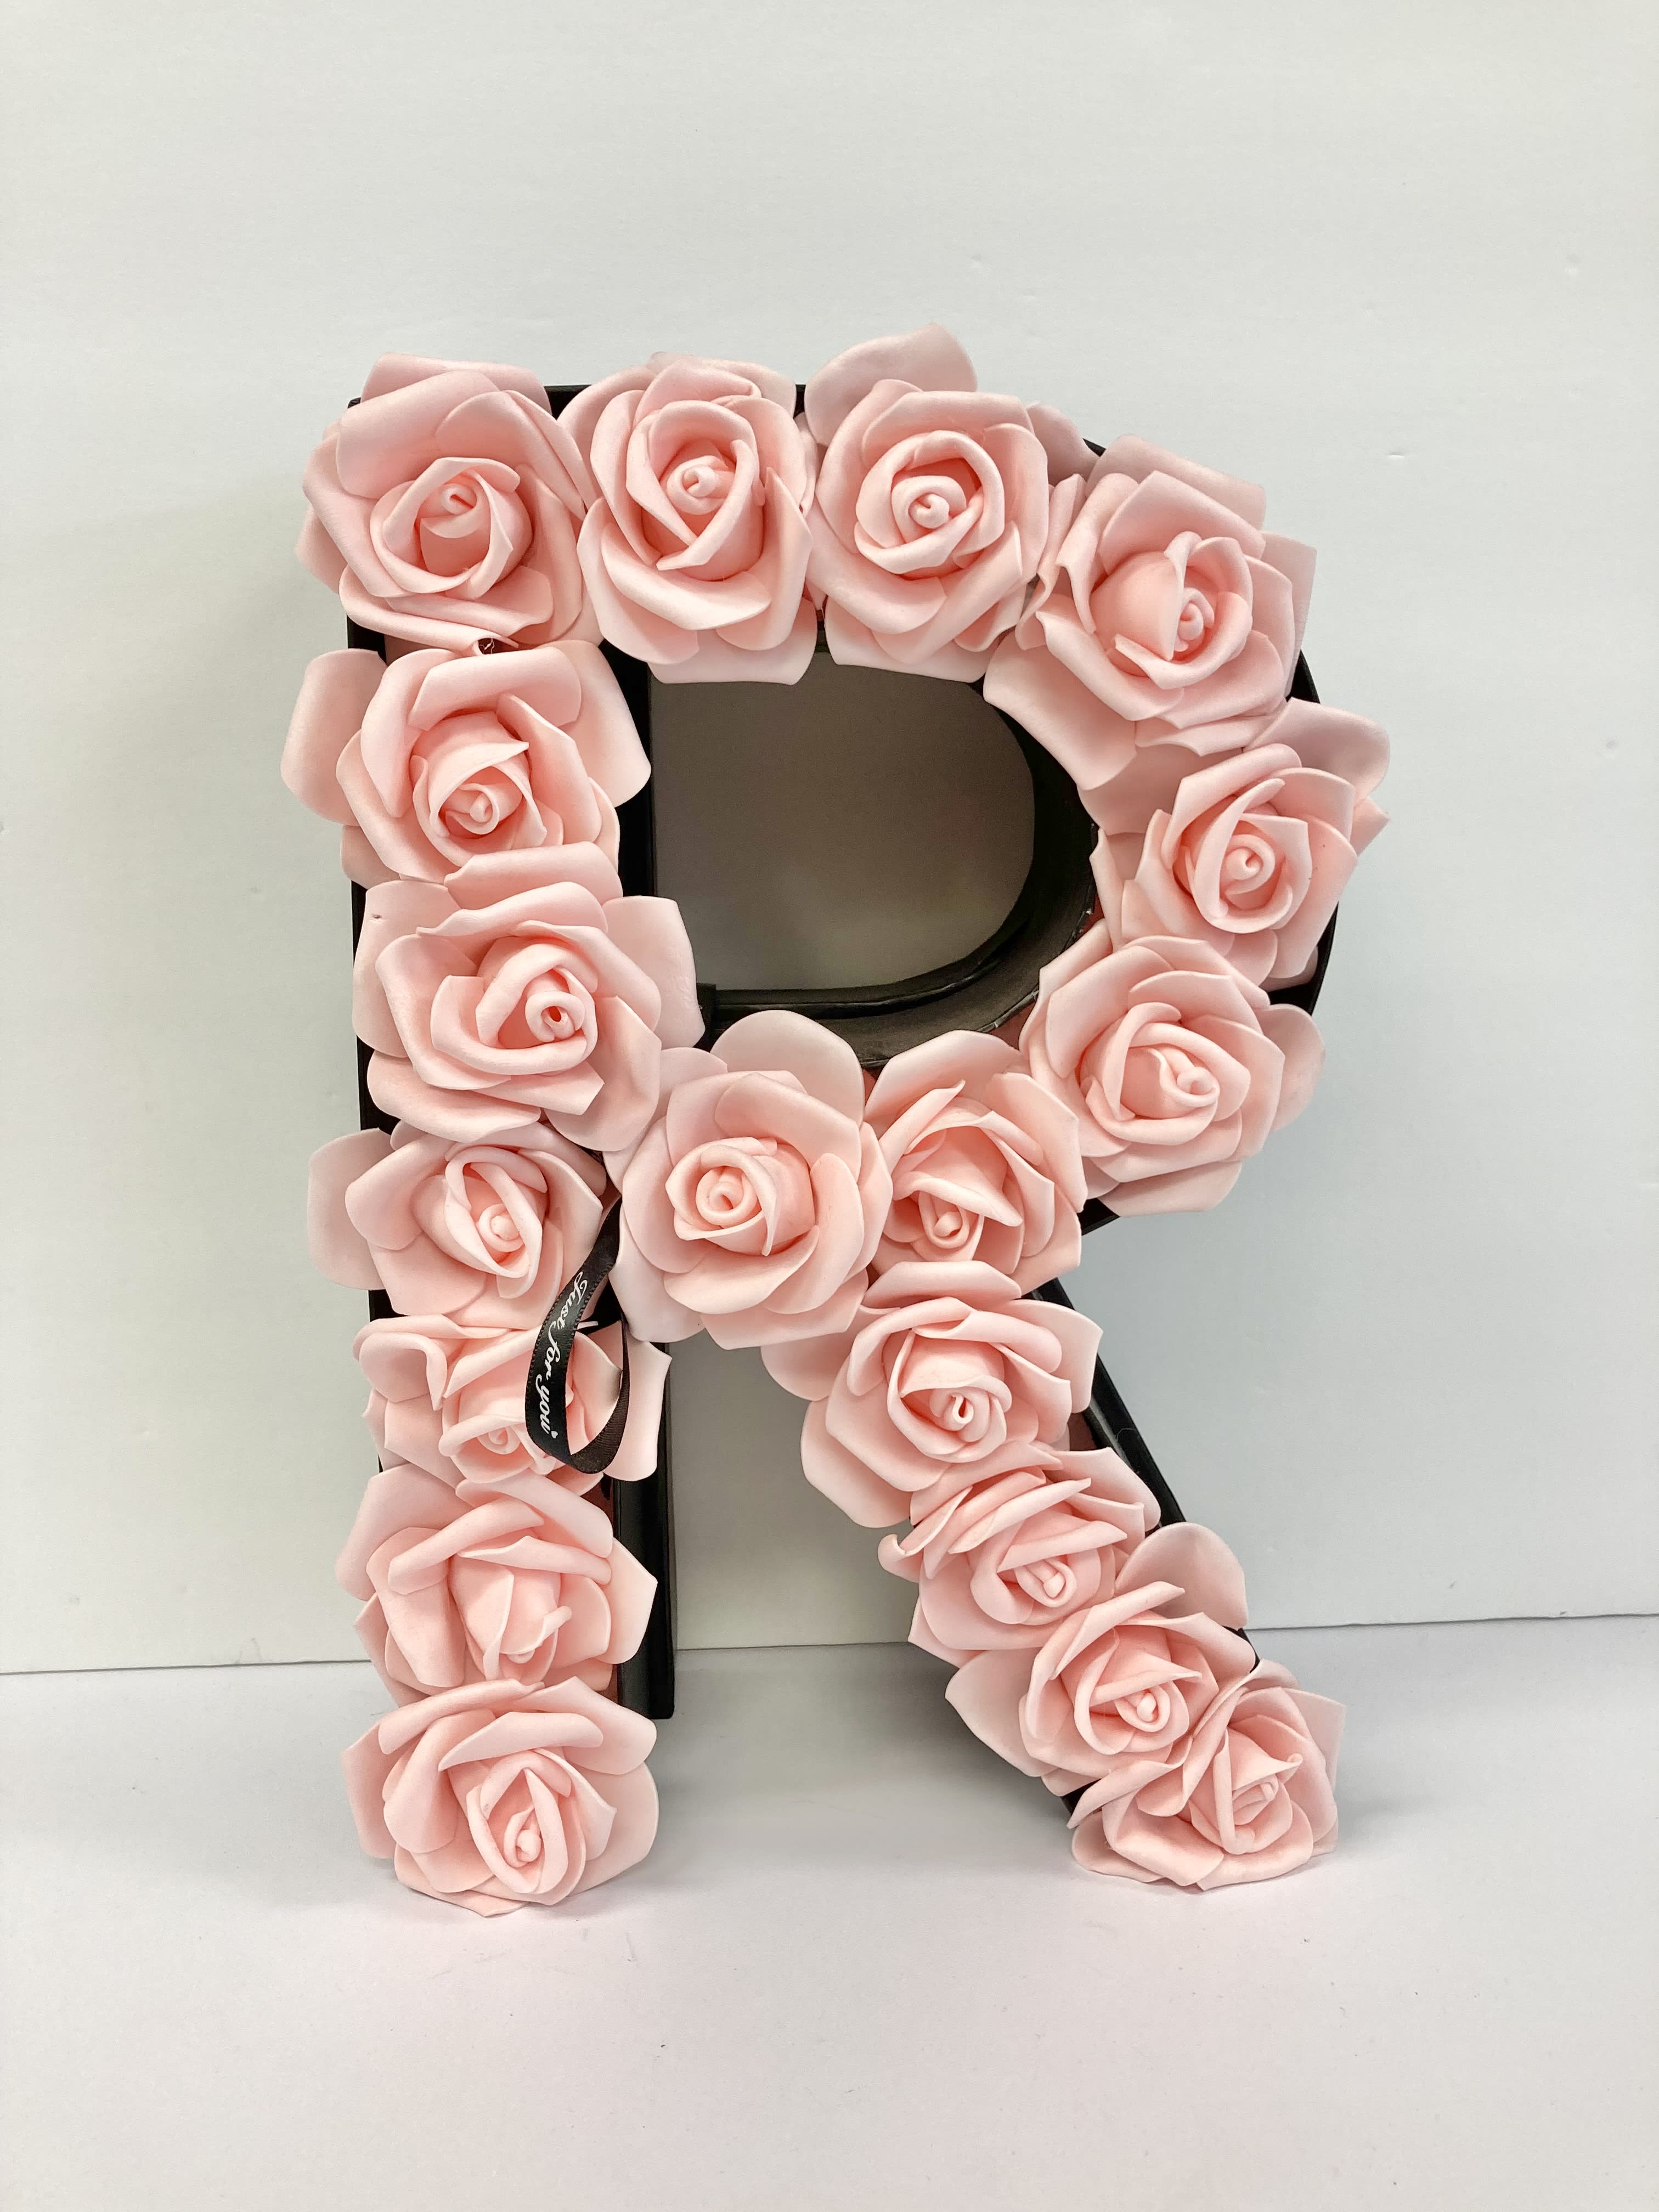 Floral Letter Box (R)